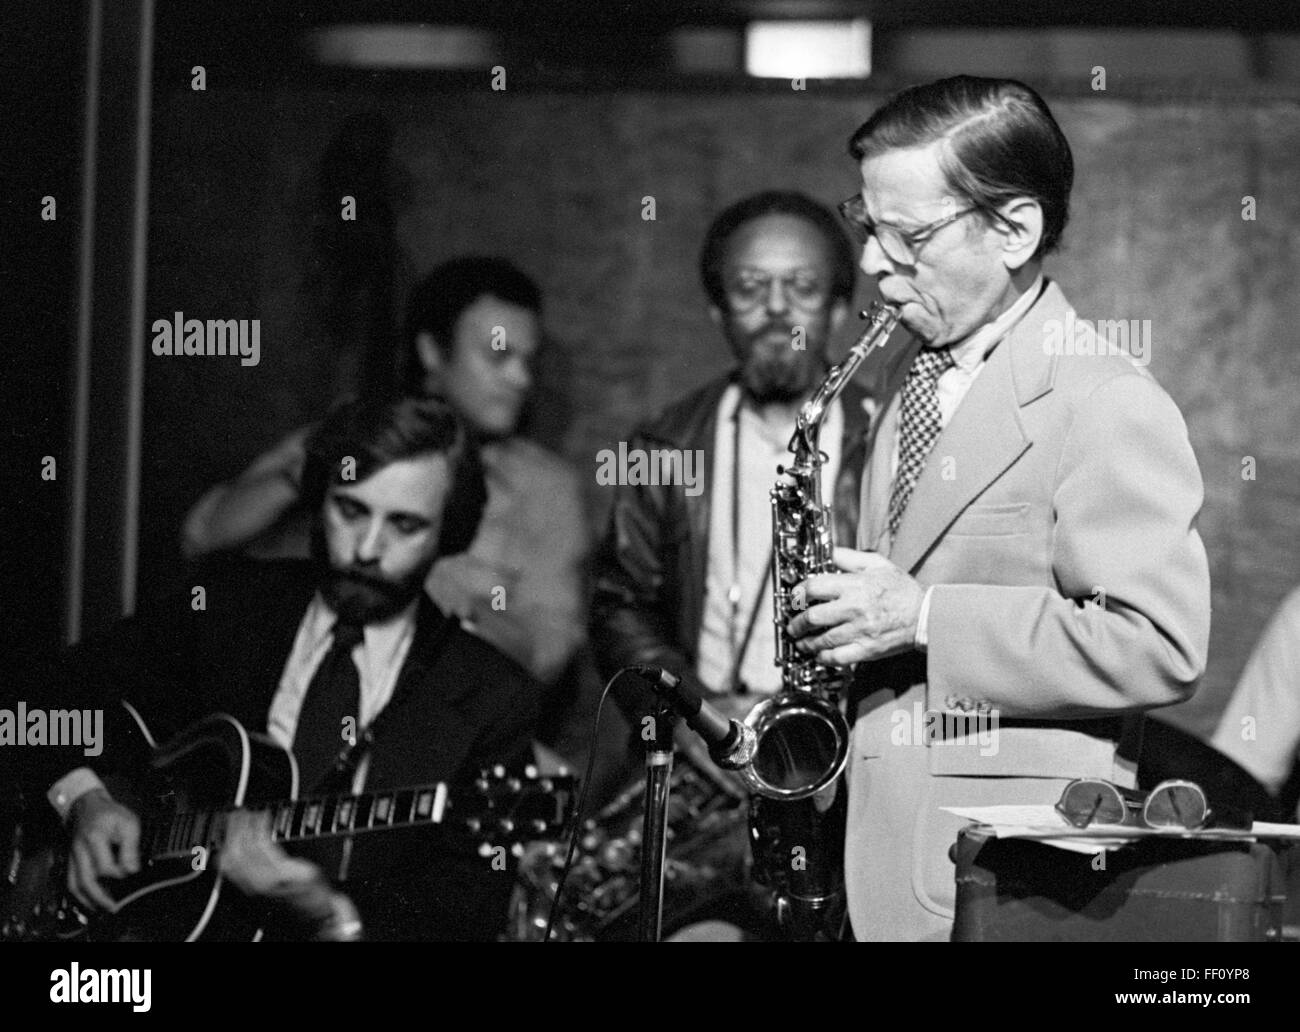 Les Lieber auf Sax, Bill Wurtzel Gitarre, Earl Mai Bass, und Jimmy Heath, am Les Liebers "Jazz am Mittag" auf 58th Street in Manhattan. Das Datum ist am ehesten 11. Januar 1980, bei einer Jam-Session mit Doc Cheatham (hier nicht abgebildet). Stockfoto